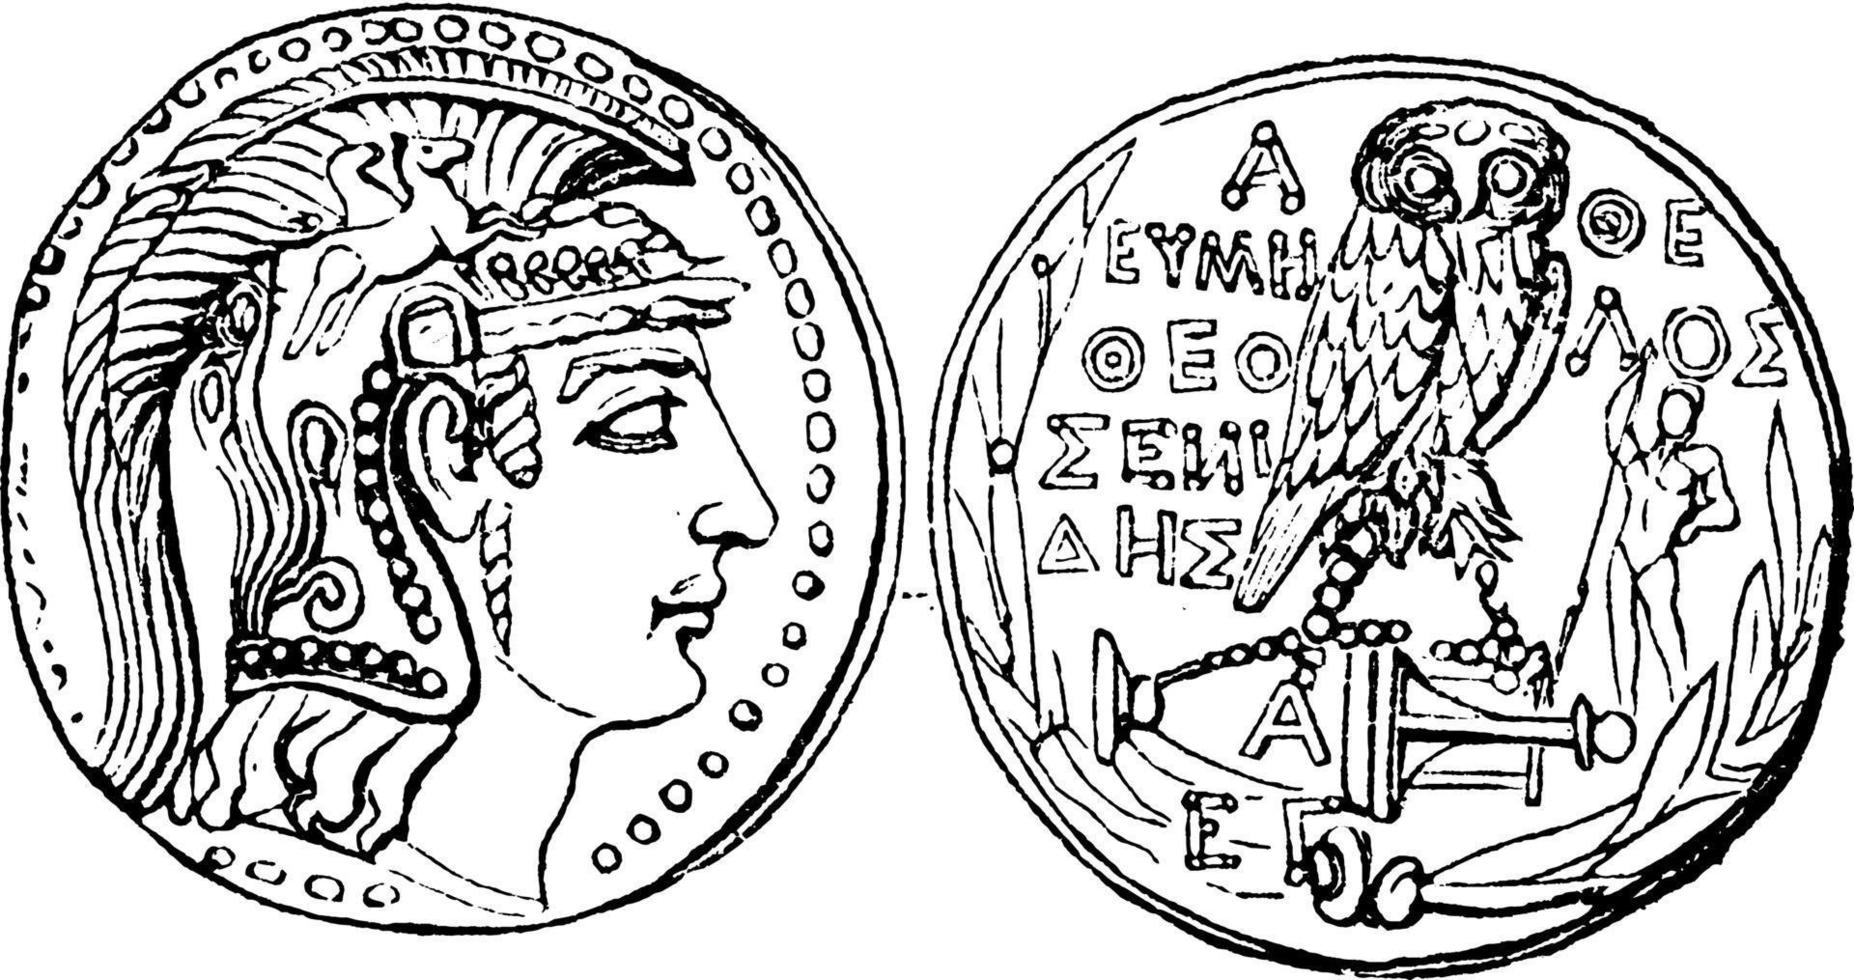 Münze von Athen, Vintage Illustration. vektor